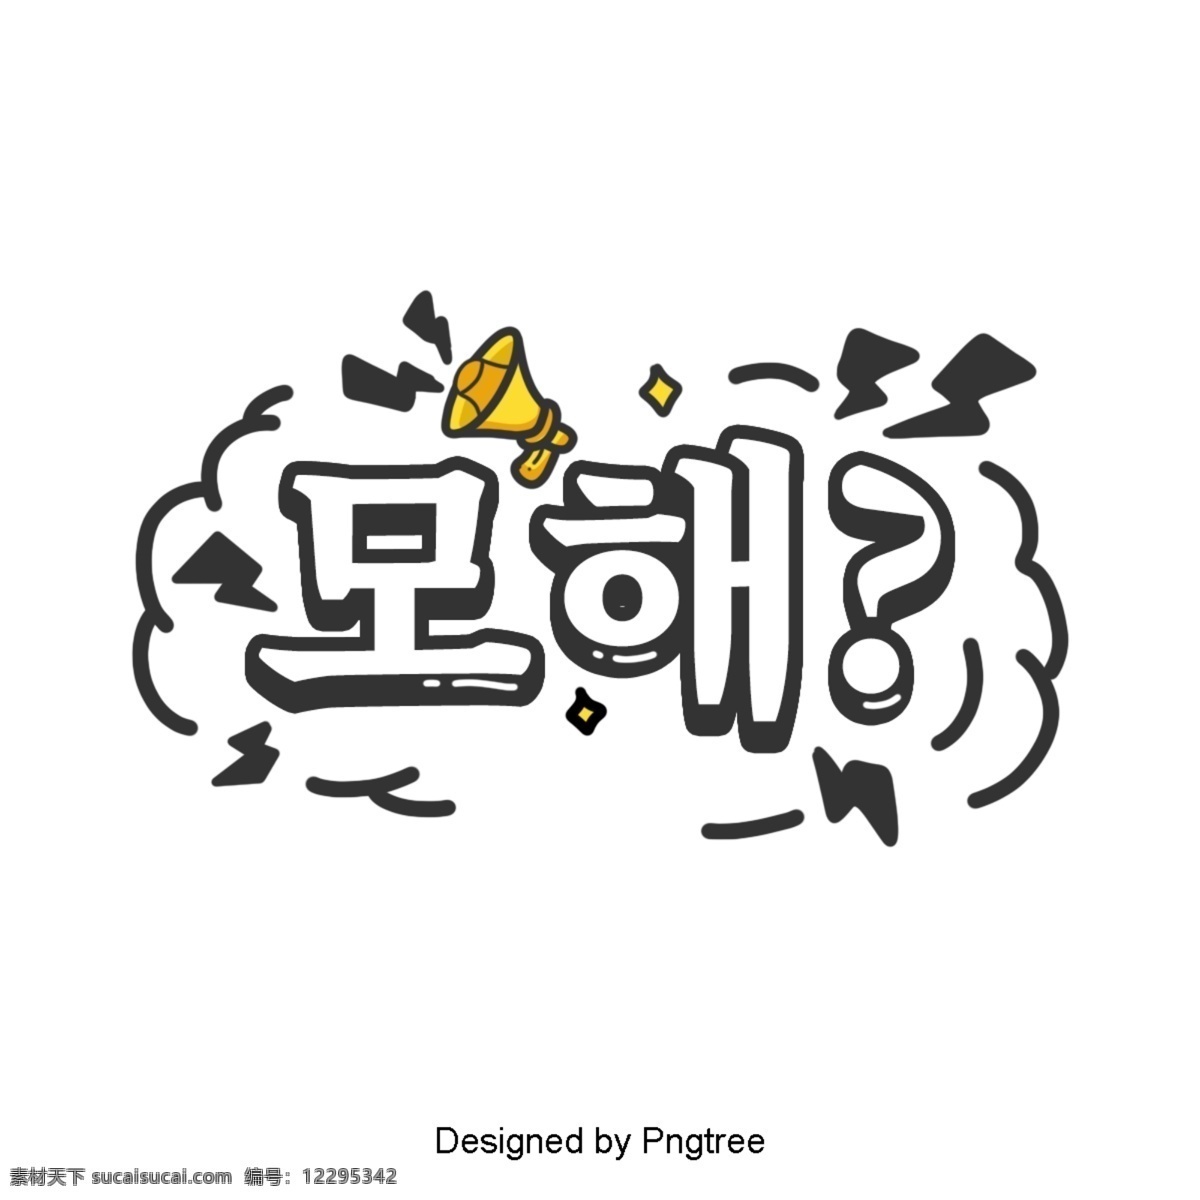 韩国 卡通 场景 中 常用 字体 简单 喇叭 一个 休克 黑与白